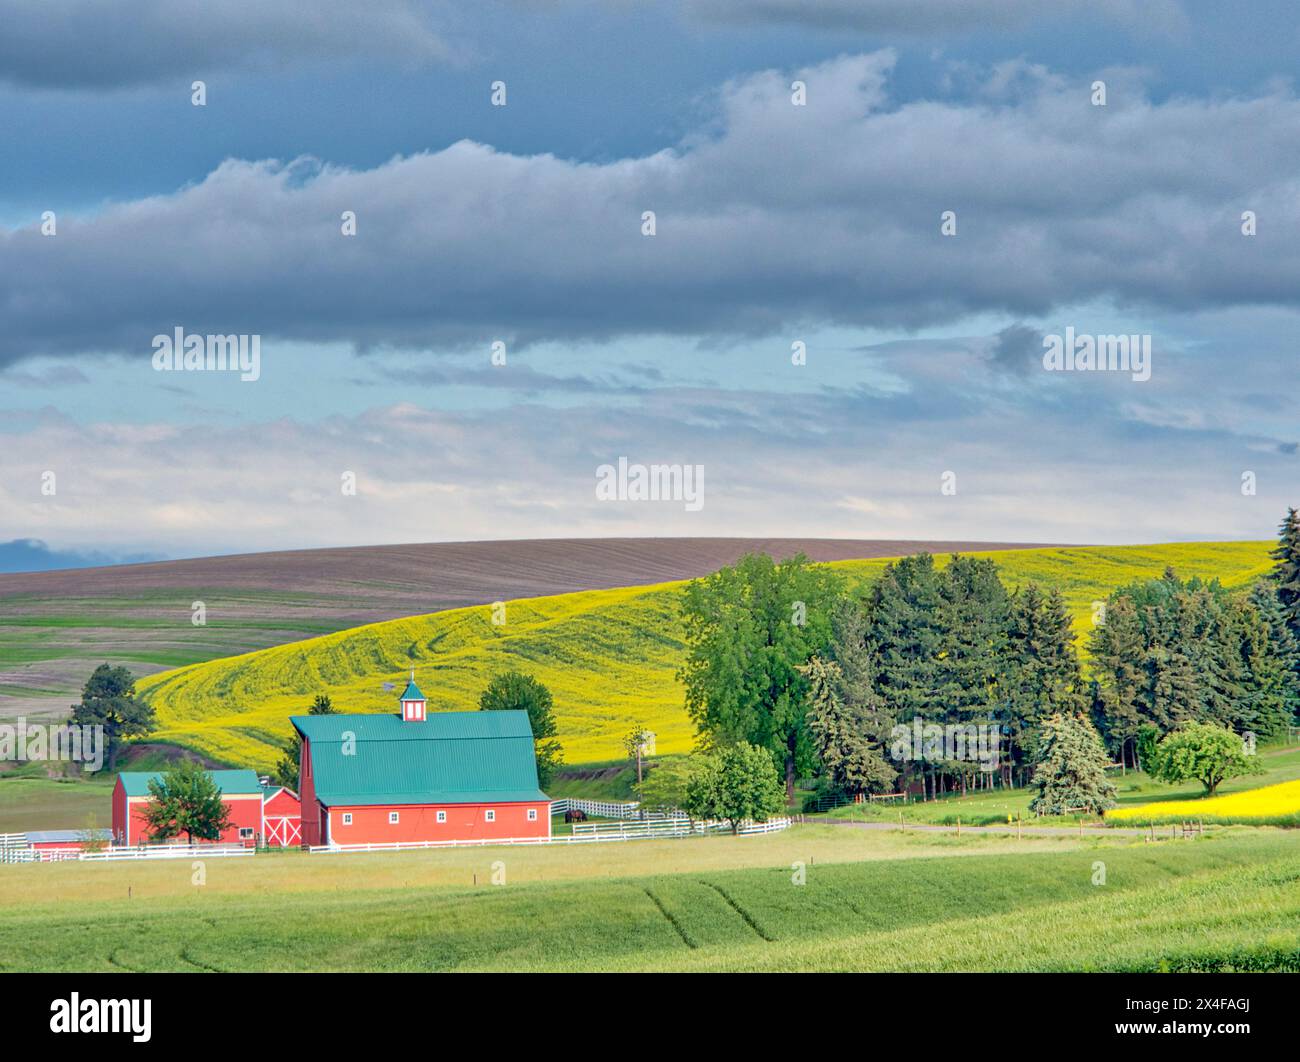 Stati Uniti, Stato di Washington, regione di Palouse. Azienda agricola in canola e campi di grano (solo per uso editoriale) Foto Stock